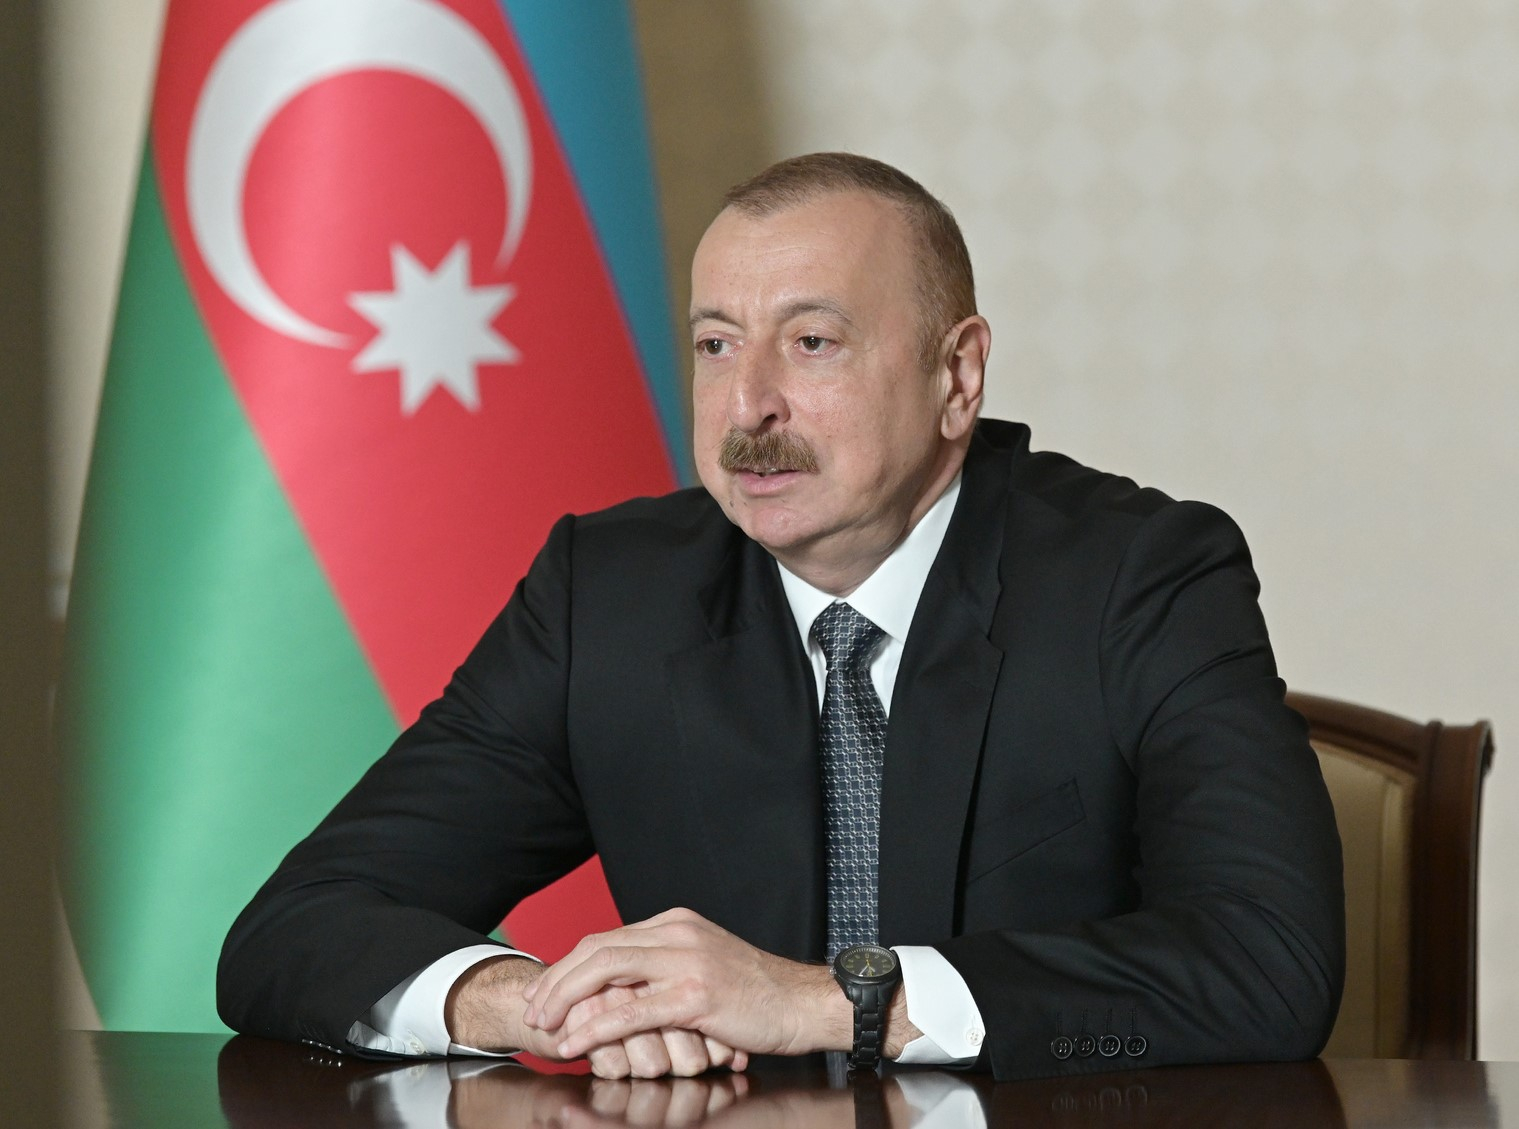 Prezident İlham Əliyev Azərbaycan vətəndaşlarına müraciət edib